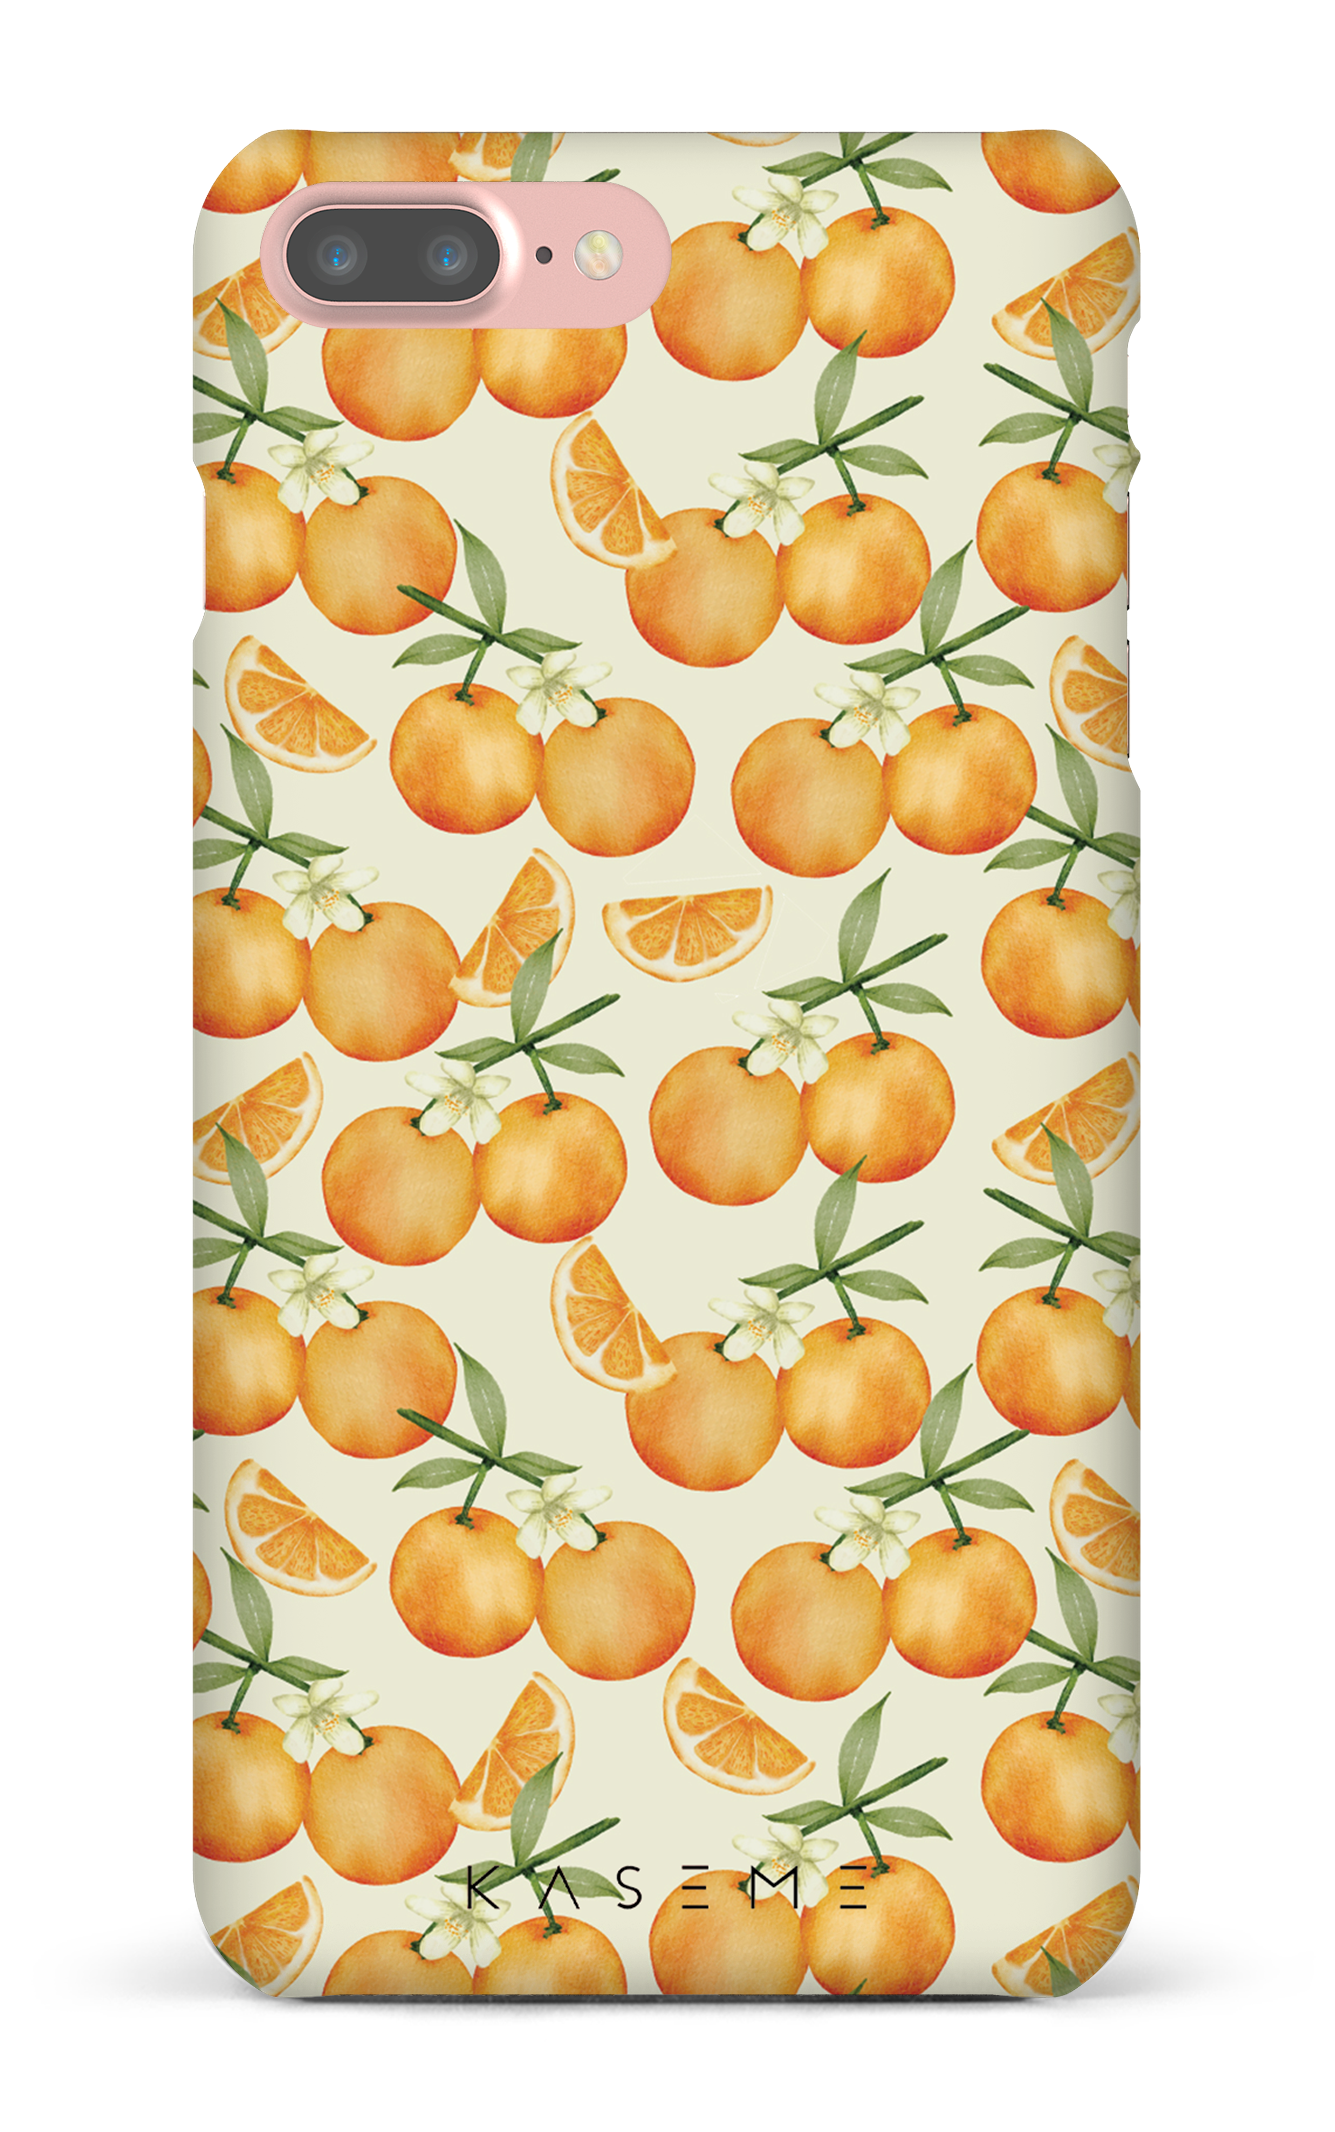 Tangerine - iPhone 7 Plus